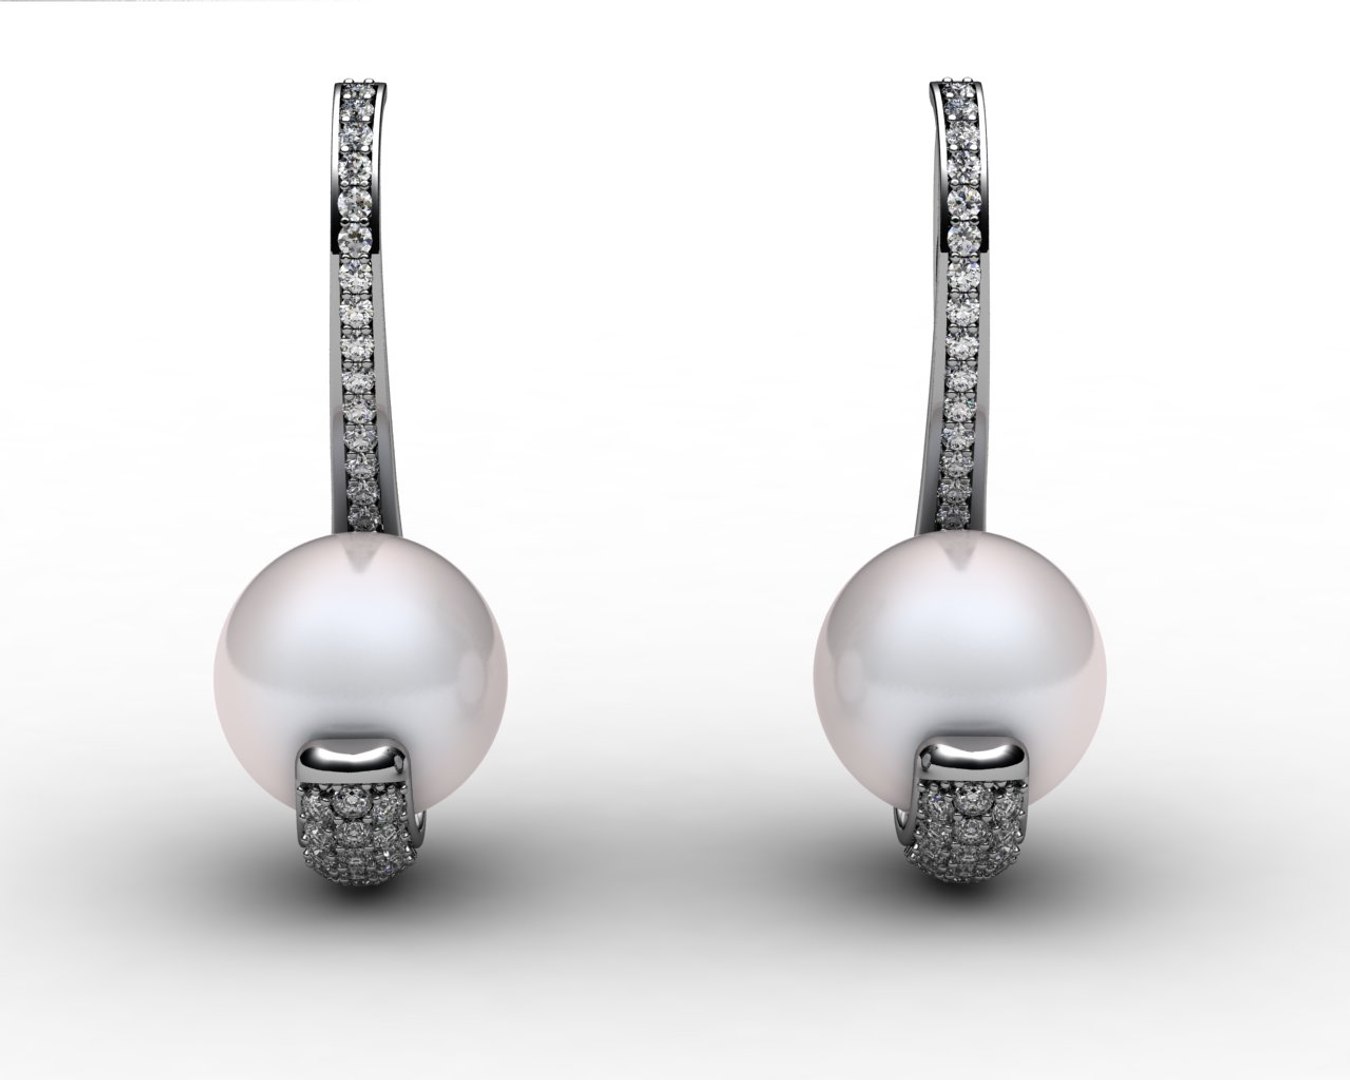 rhino earrings pearls diamond https://p.turbosquid.com/ts-thumb/wg/yoJgPg/Os0yQyg1/frontale/jpg/1384108752/1920x1080/fit_q87/c46b2a5eba861bc76f2b14cd9146121c0edfd9eb/frontale.jpg